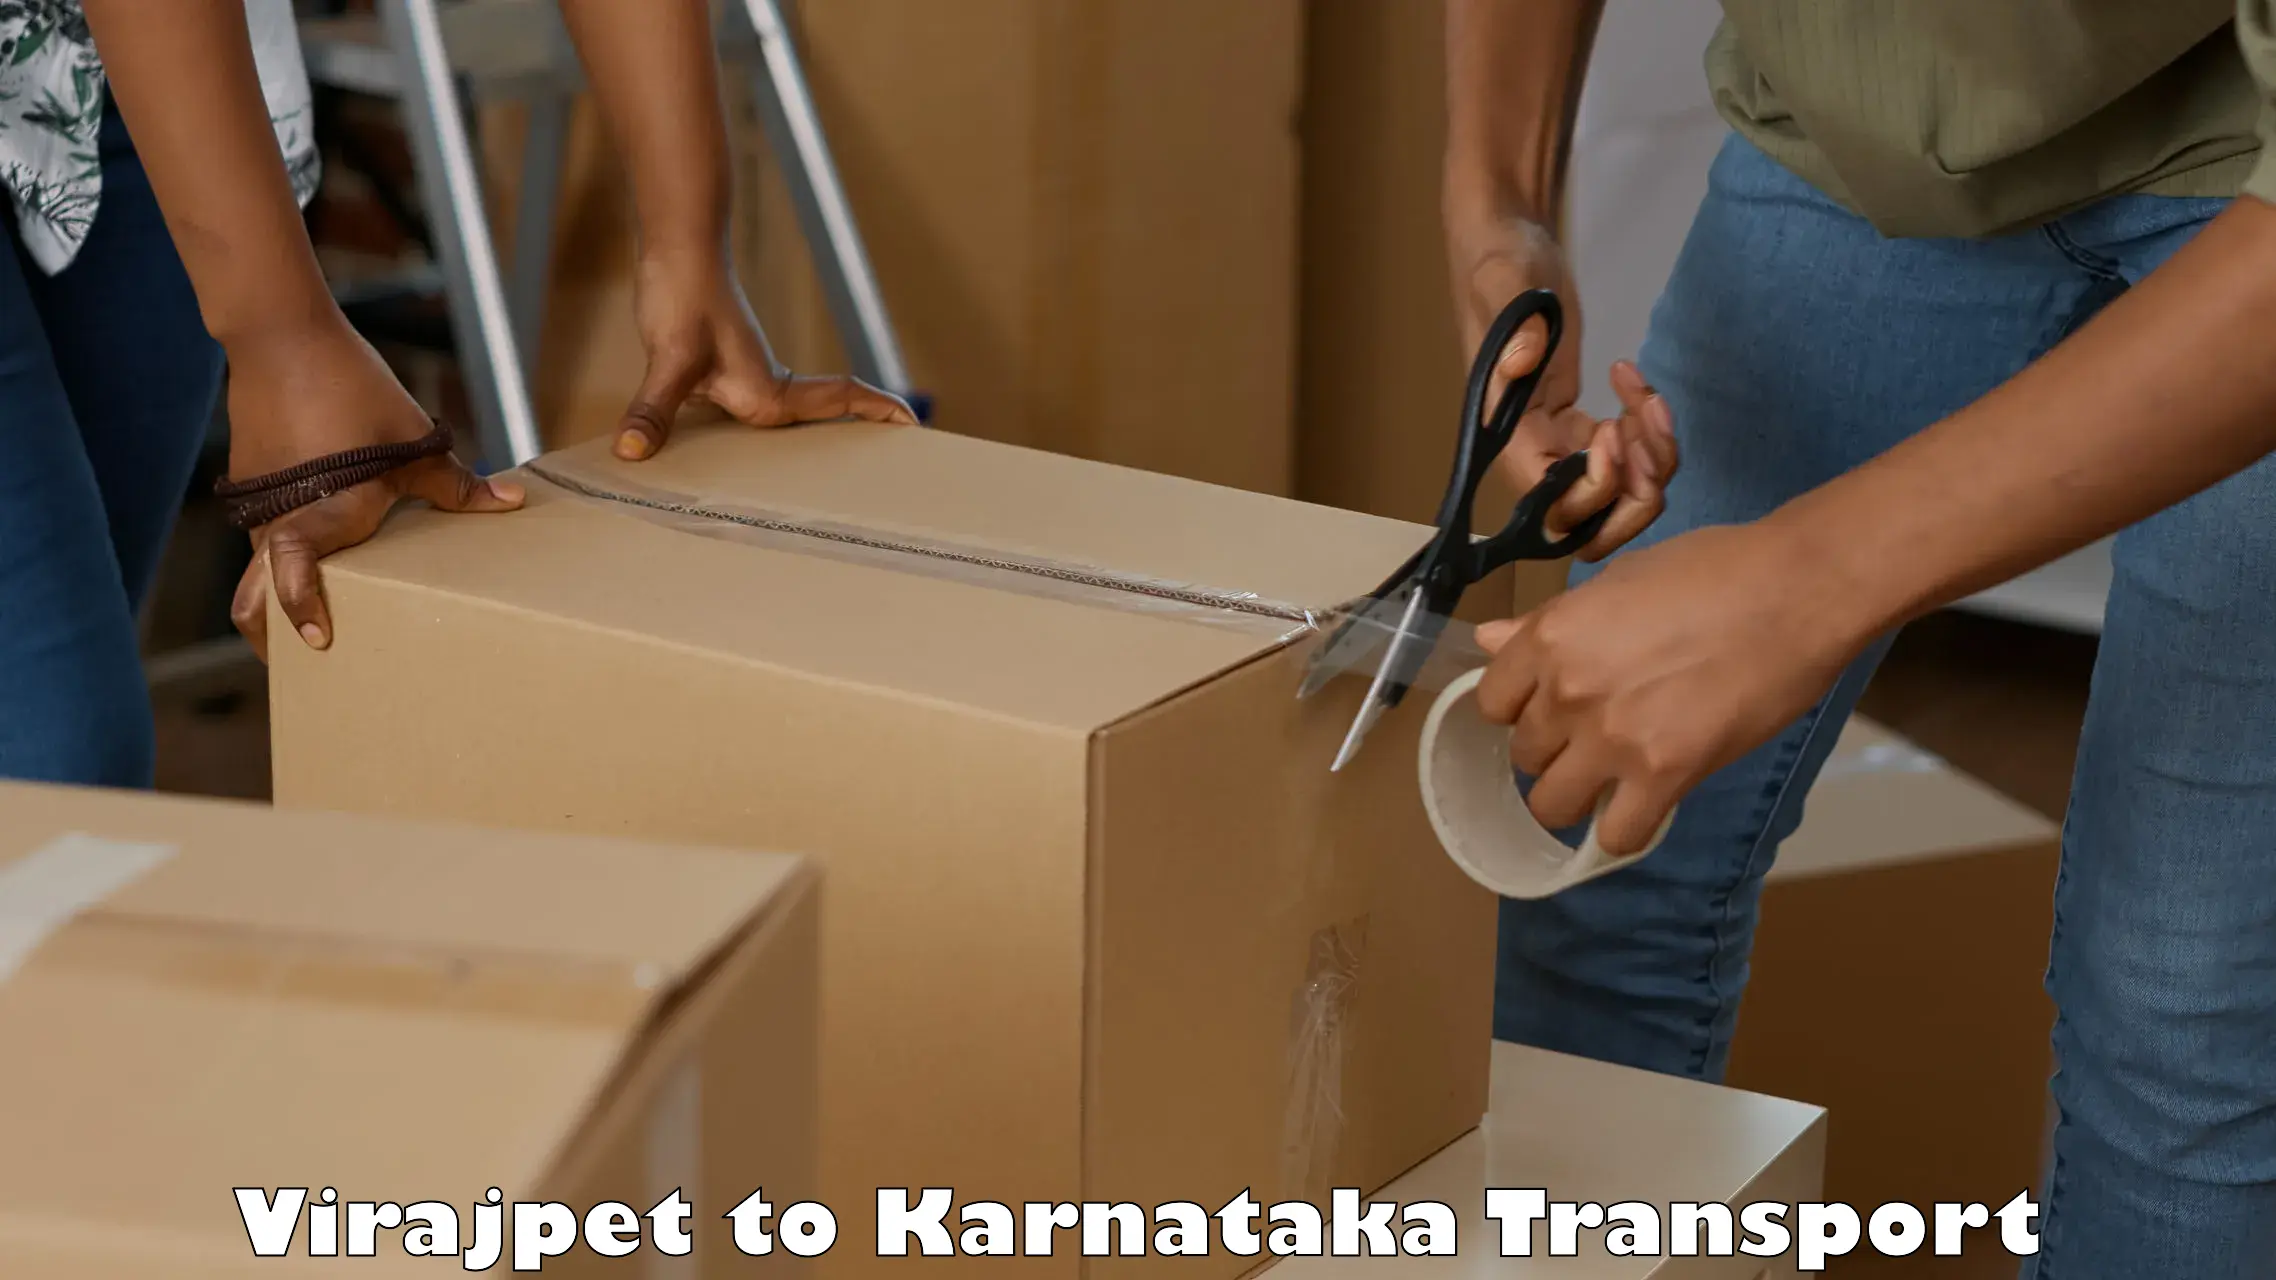 Furniture transport service in Virajpet to Karnataka